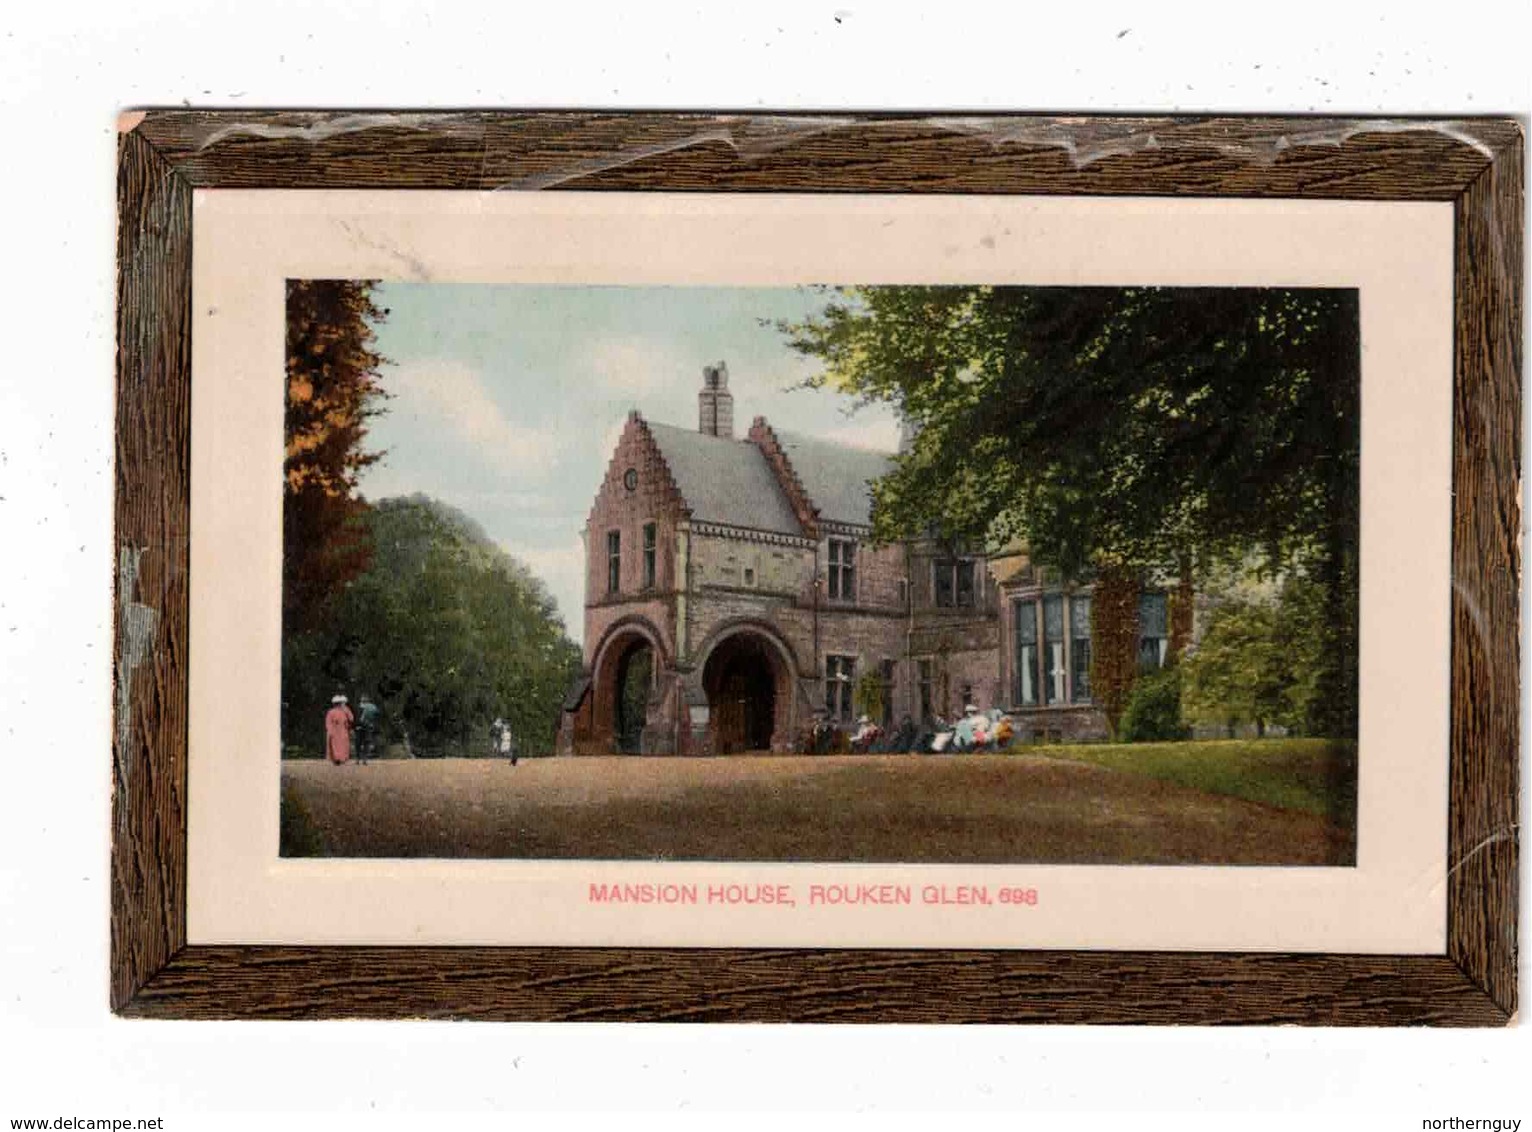 THORNLIEBANK, Renfrewshire, Scotland, Mansion House In Rouken Glen, Pre-1920 Postcard - Renfrewshire